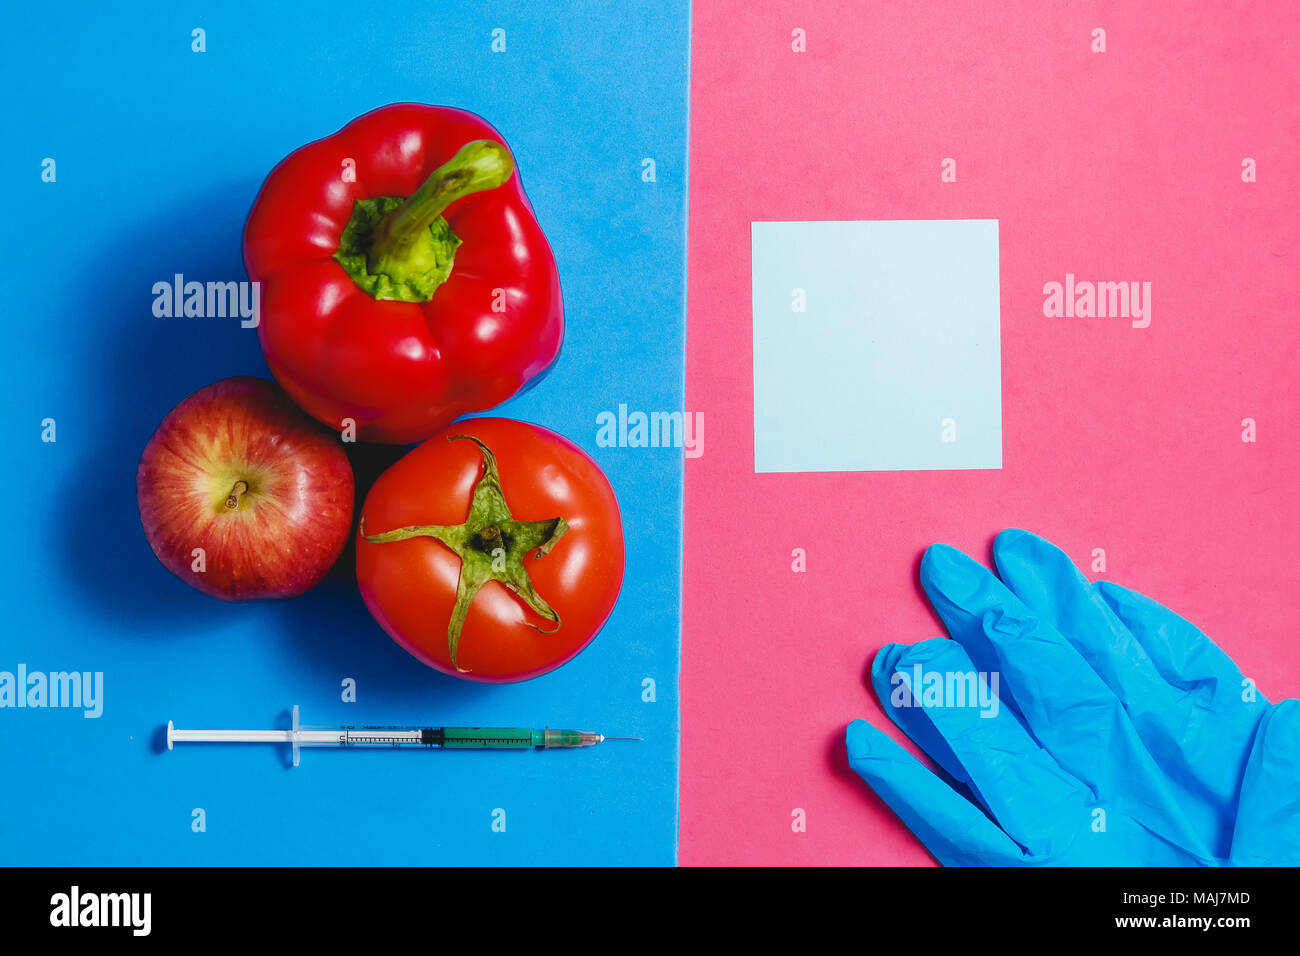 Remarque, un liquide vert dans la seringue, tomate, pomme rouge, poivre, Bleu Gants. Les aliments modifiés génétiquement Concept sur Rose bleu. Banque D'Images